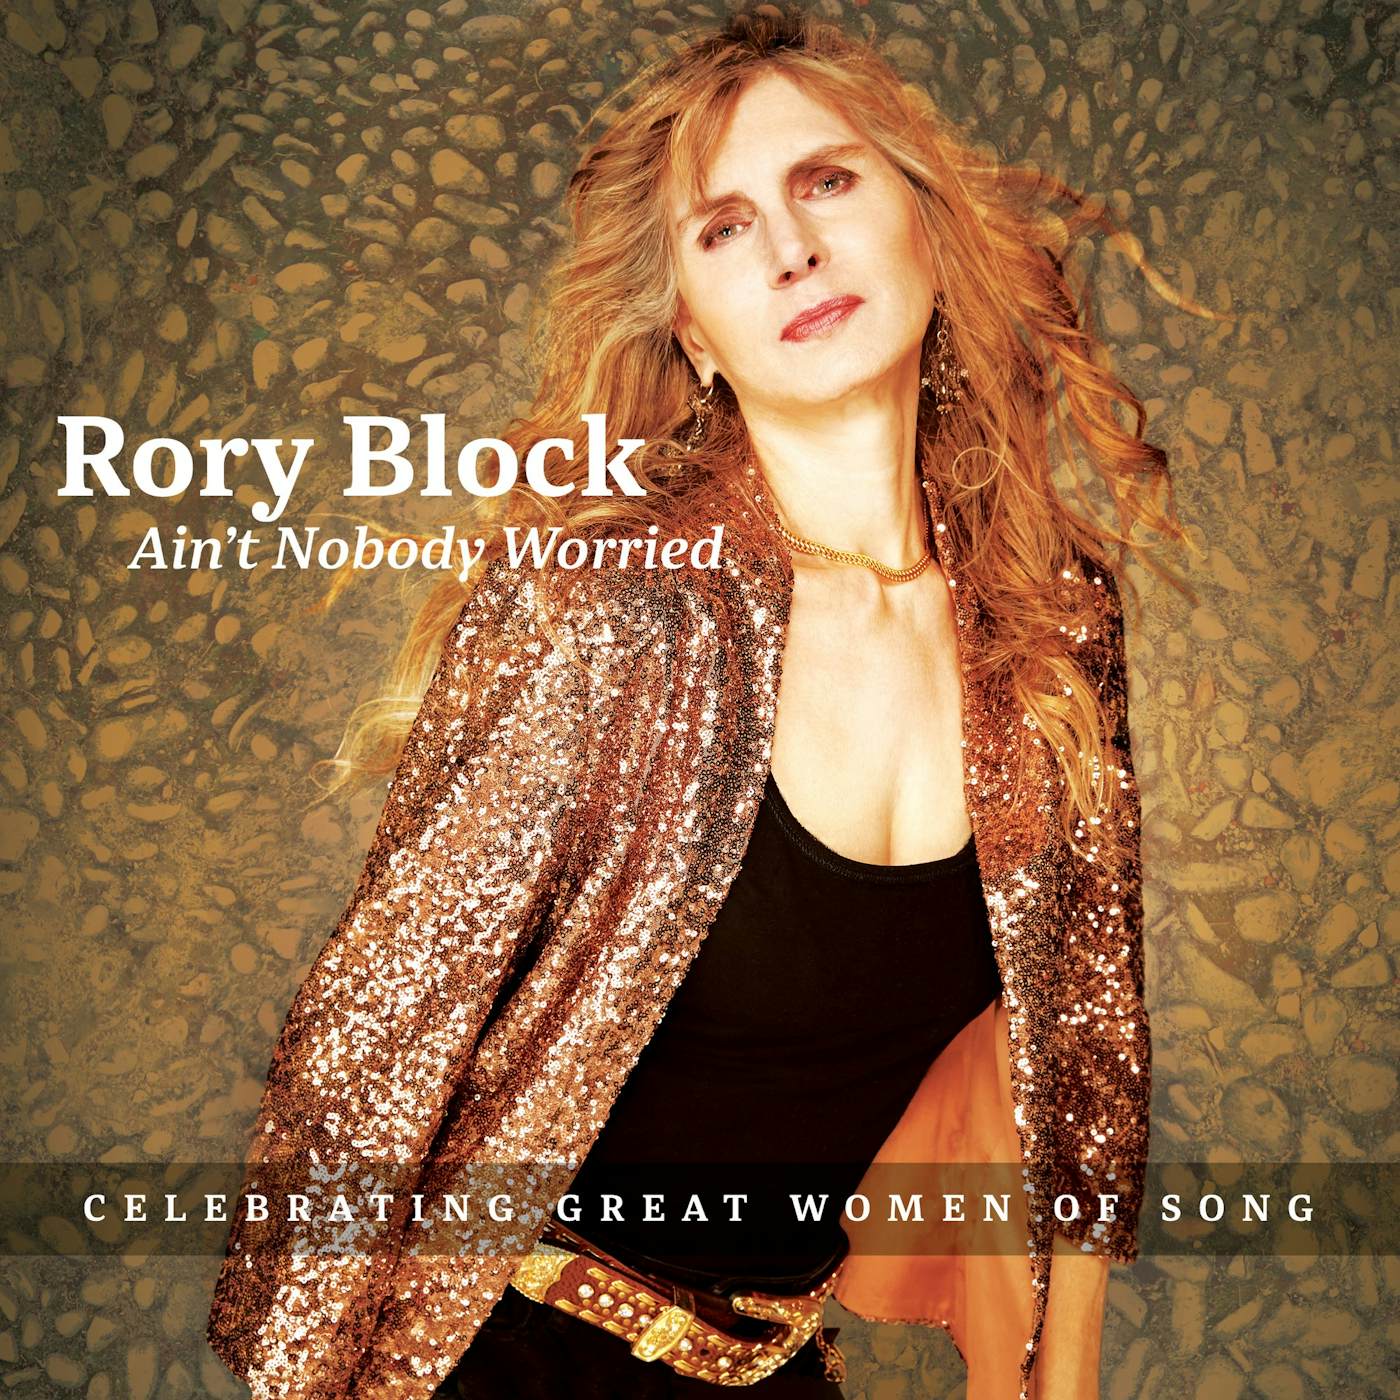 Rory Block AIN'T NOBODY WORRIED CD